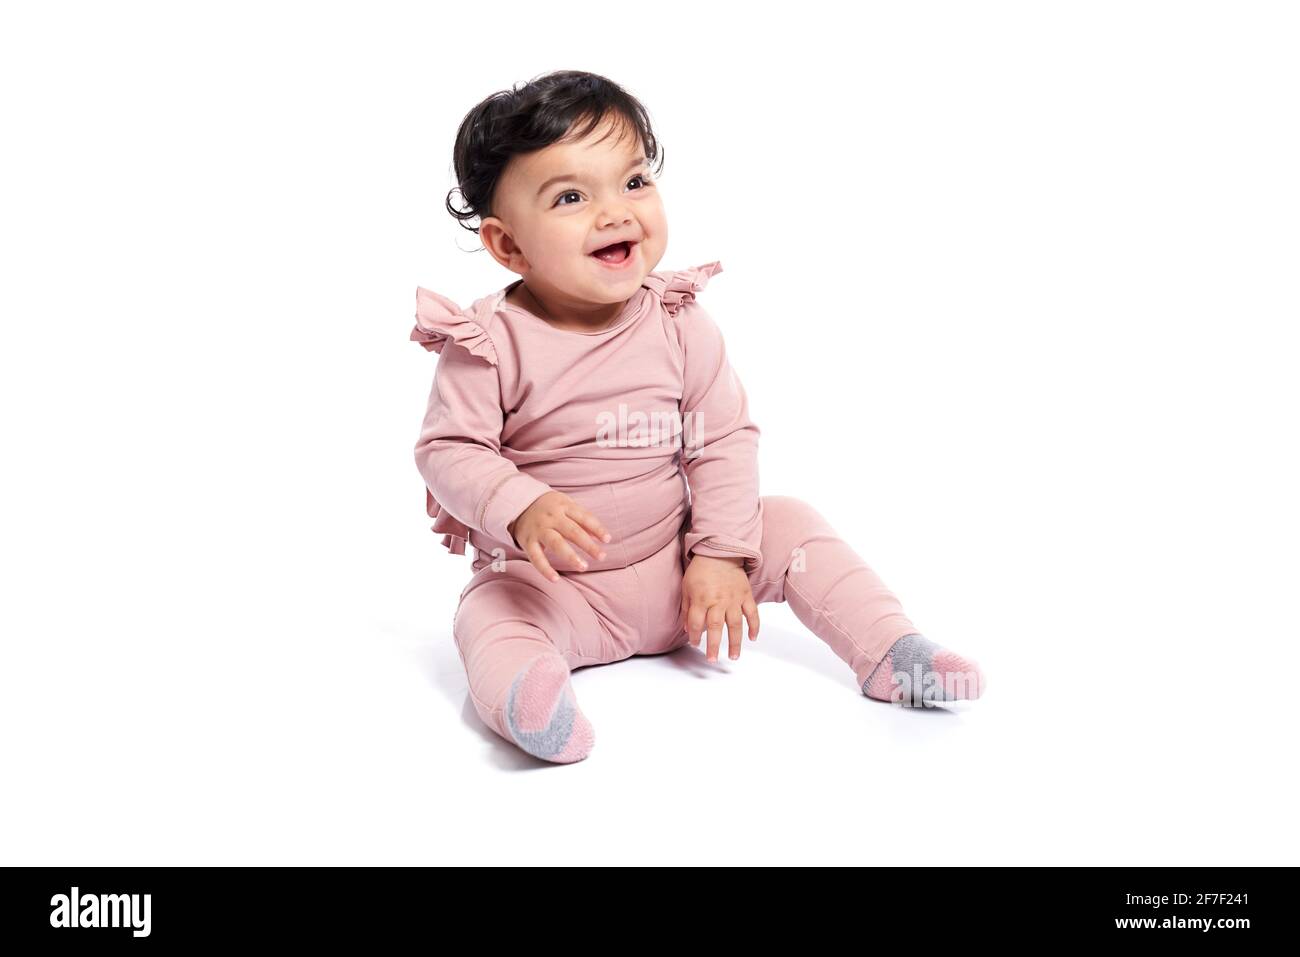 Entzückende weibliche Baby in schönen rosa Outfit lächelnd mit Mund offen. Attraktives kleines Kind, das auf dem Boden sitzt und posiert, isoliert auf weißem Studiohintergrund. Konzept der Kindheit. Stockfoto